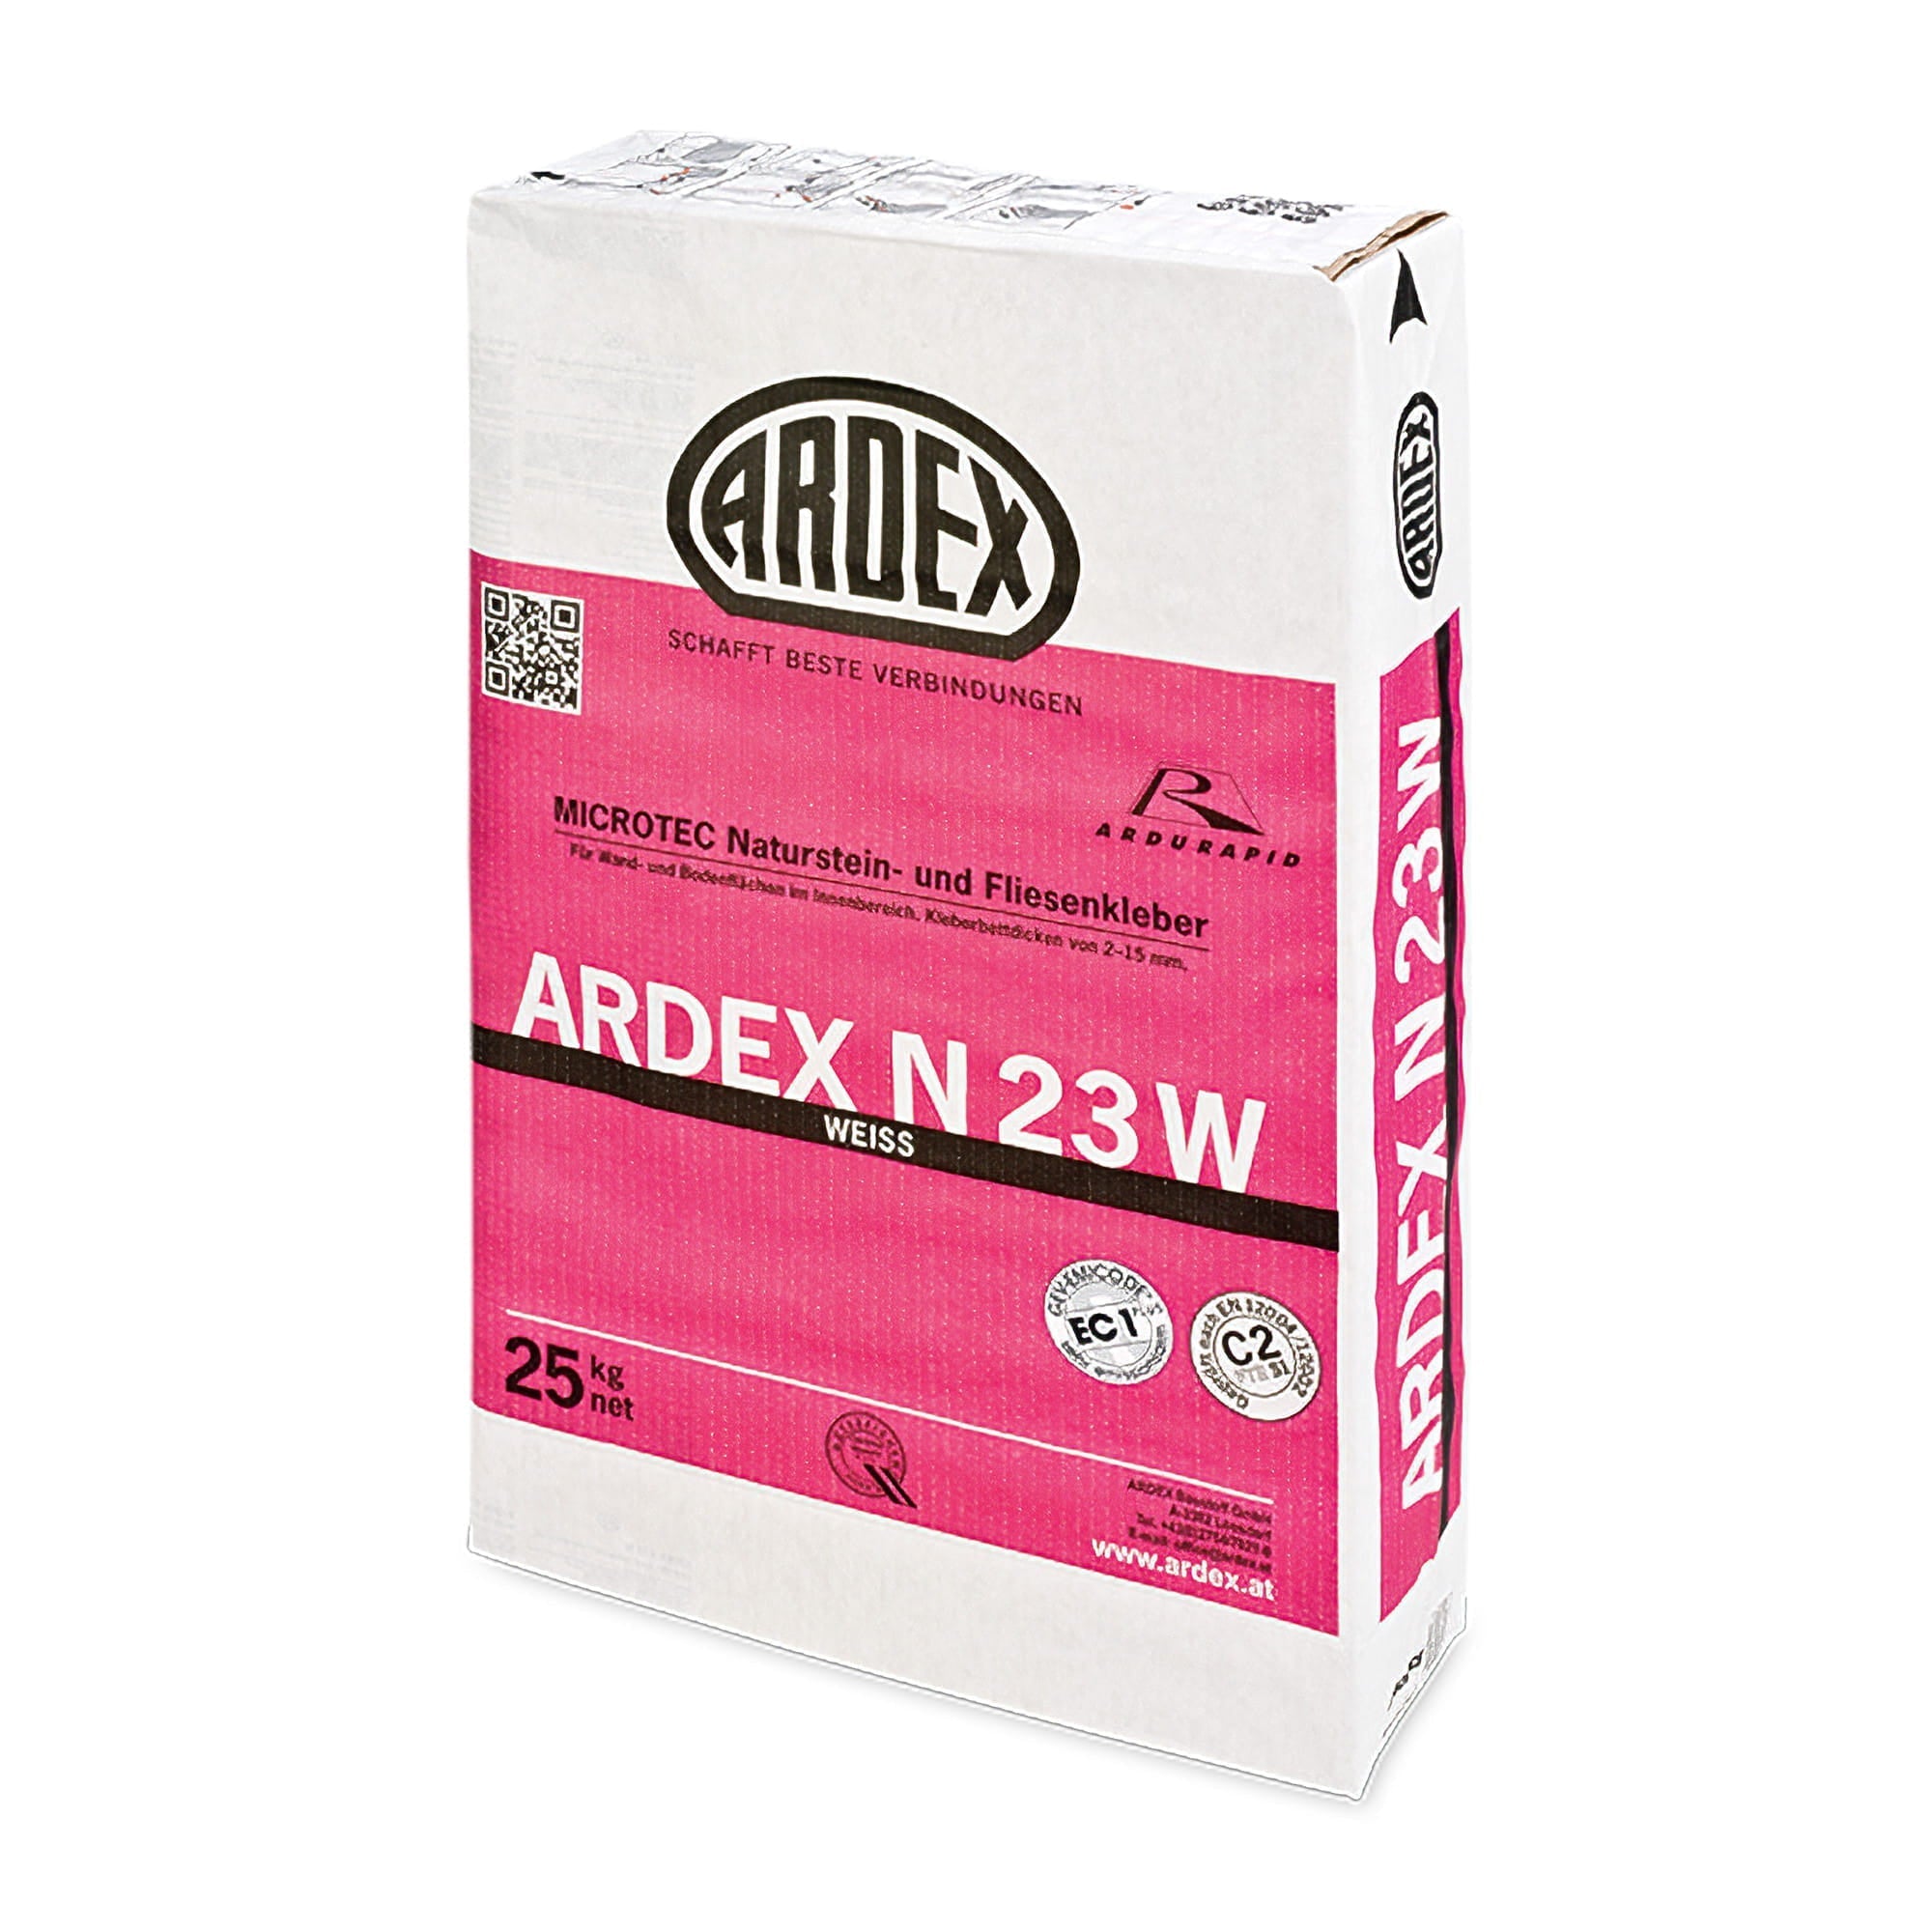 Az ARDEX N 23 W MICROTEC természetes kő- és csemperagasztó kiváló az ARDURAPID effektusának, beltéri fal- és padlófelületekre való alkalmazásra.